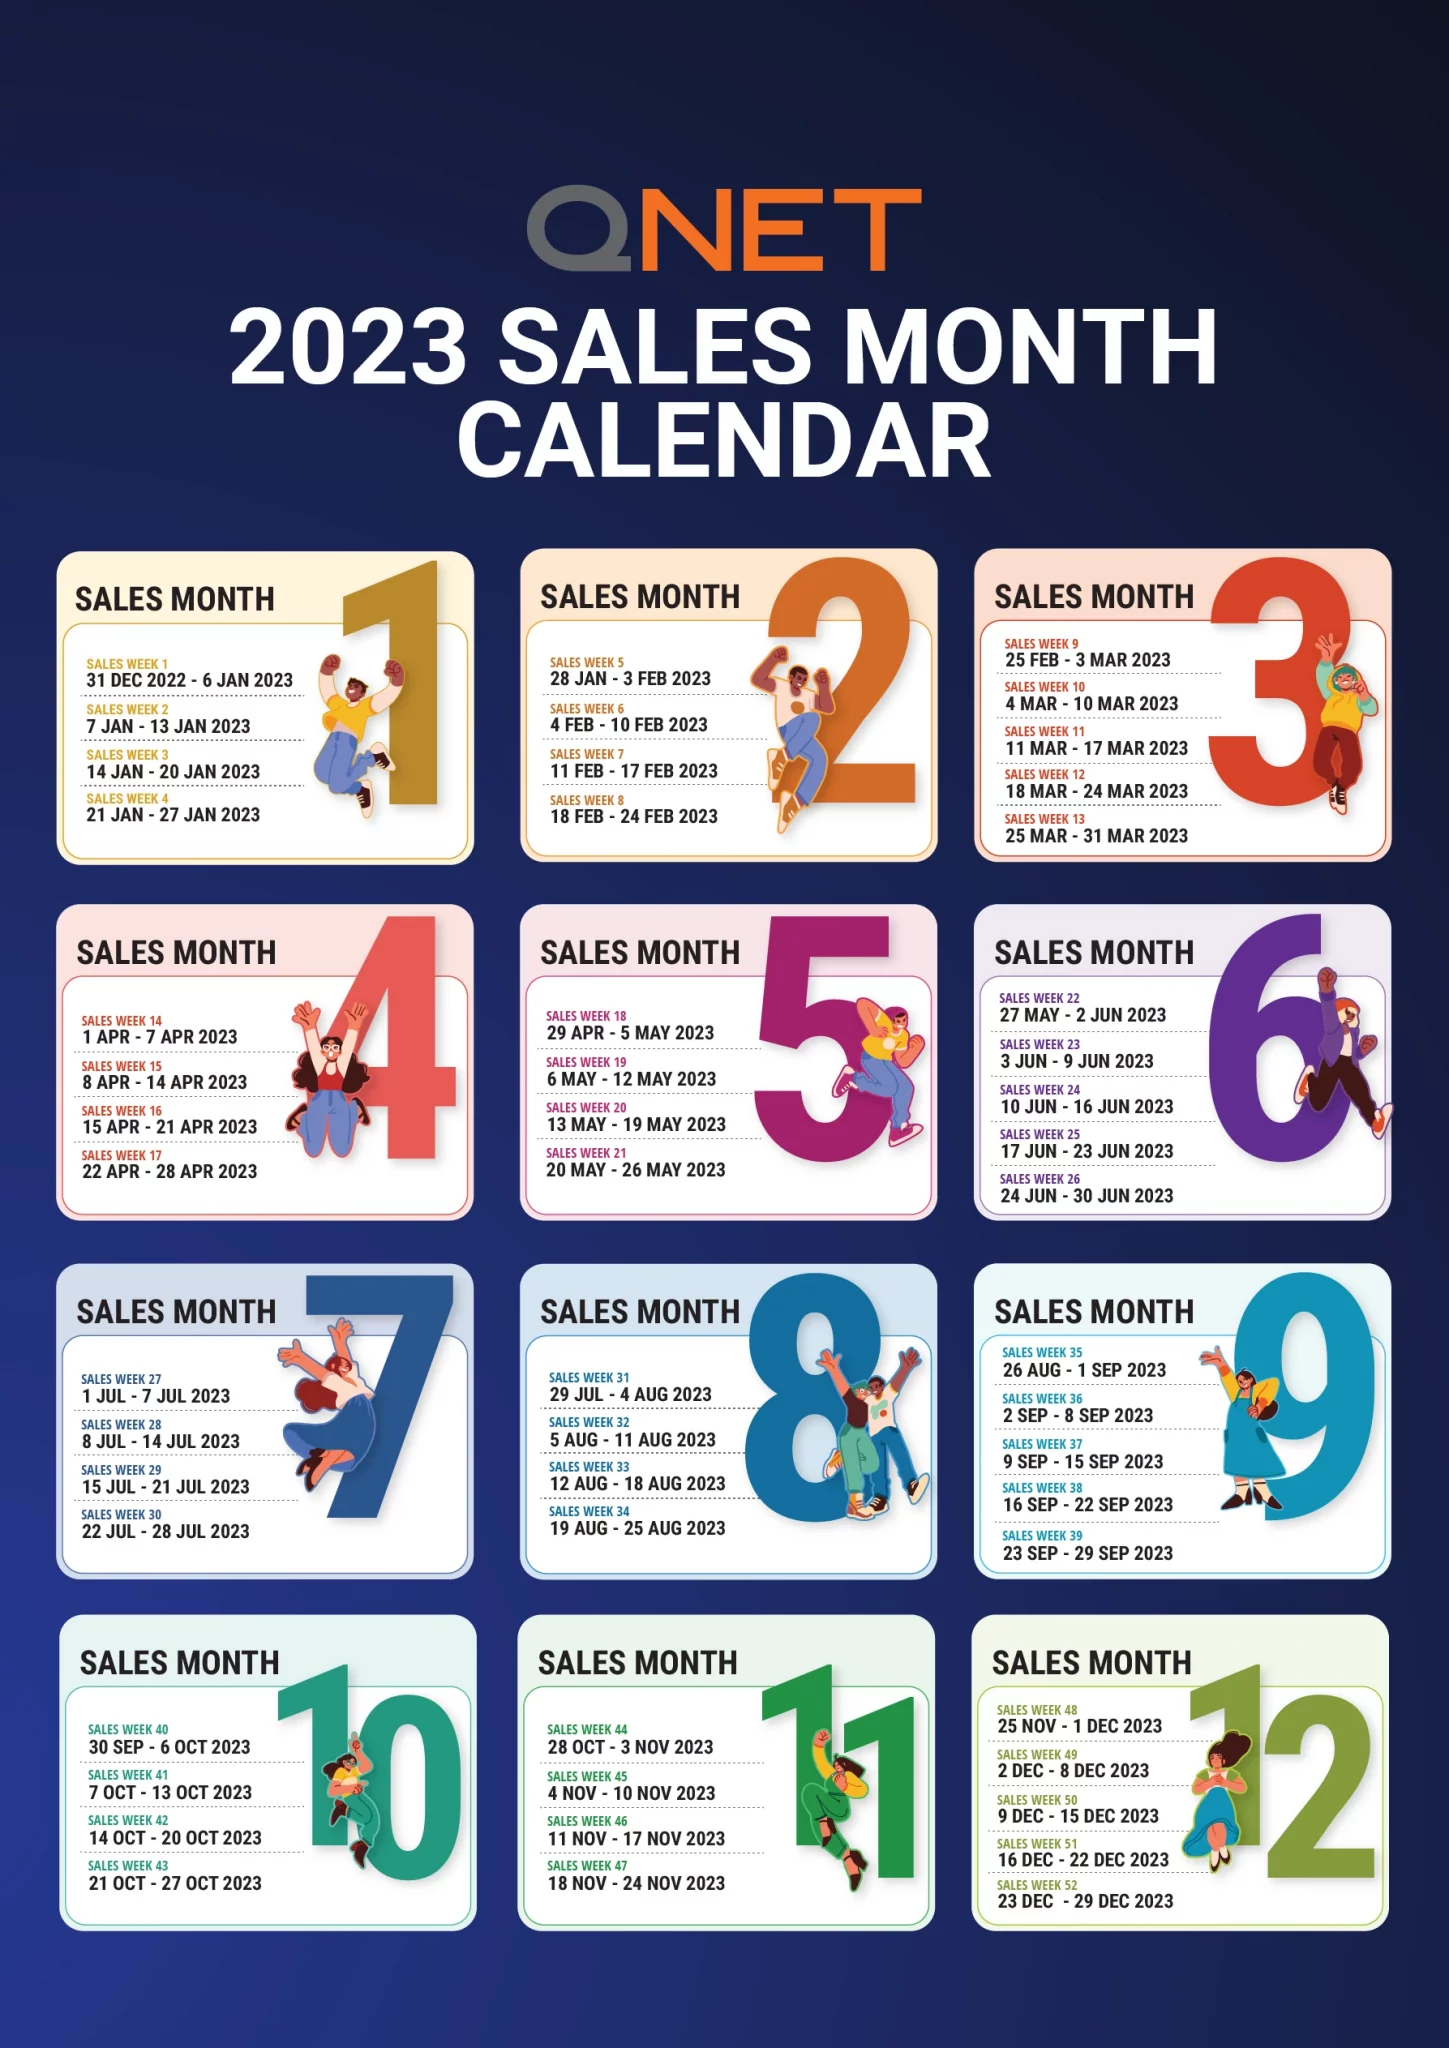 2023 QNET Sales Calendar for your QNET Business Plan